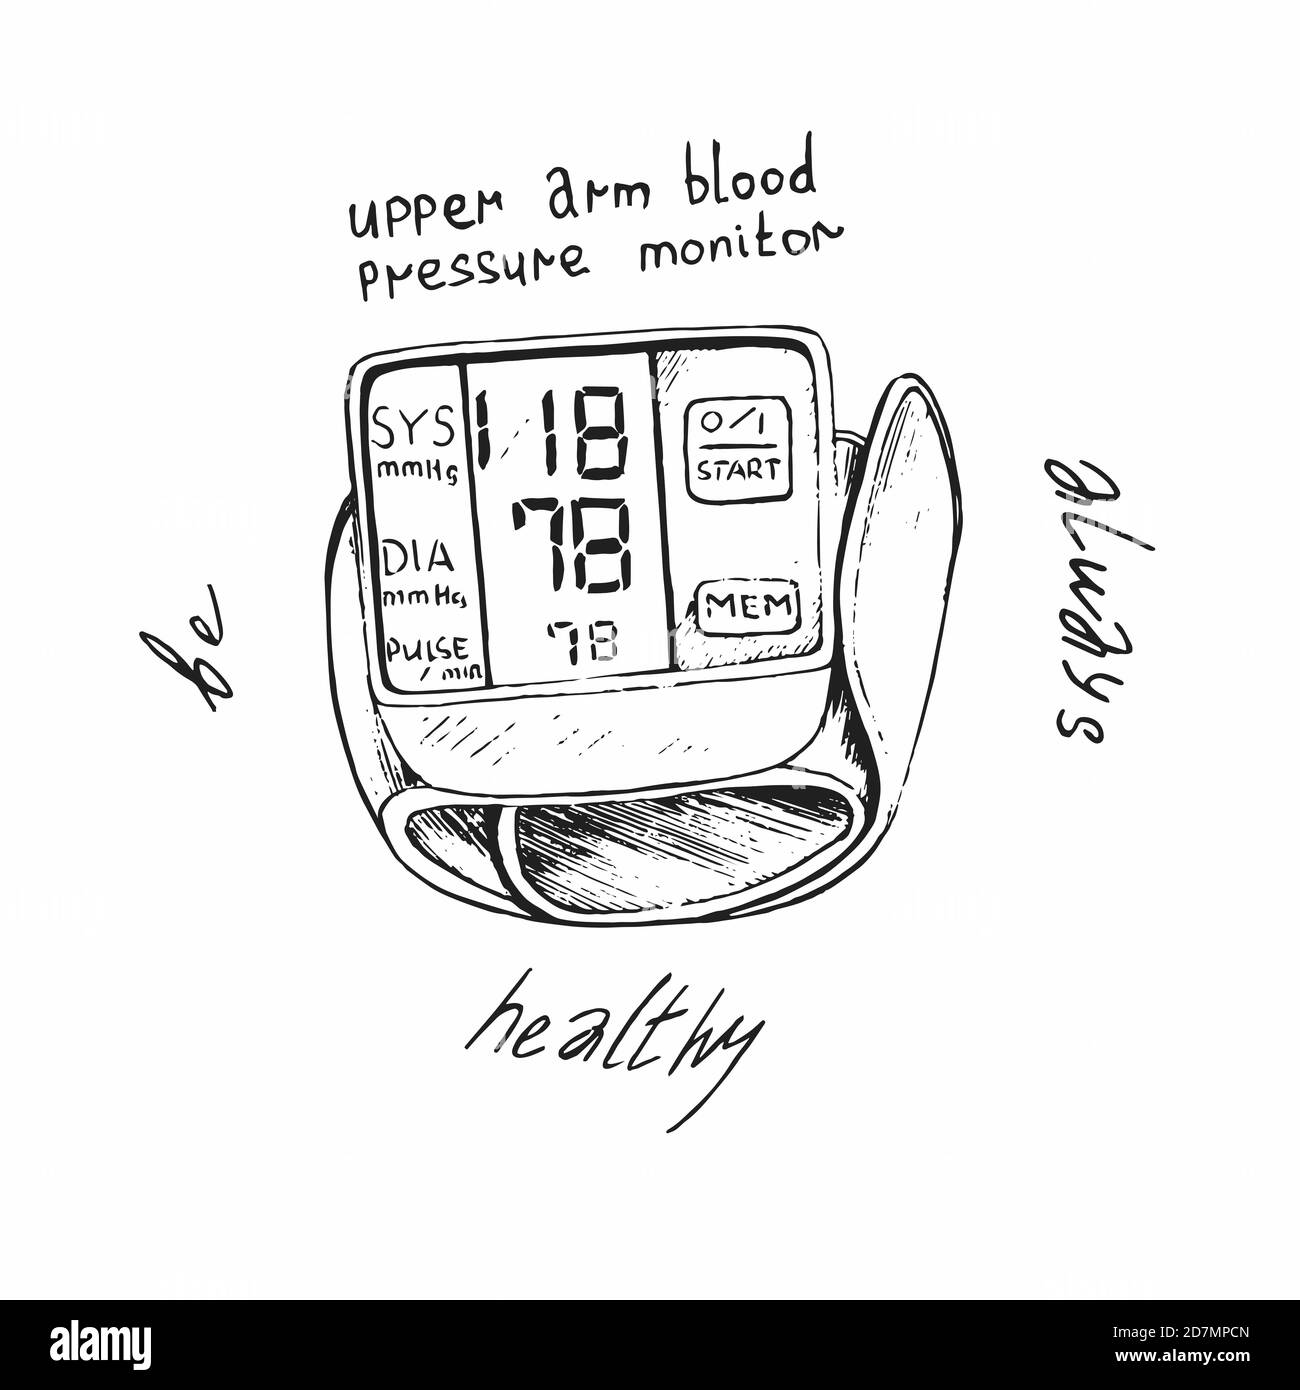 Oberarm Blutdruckmessgerät mit Beschriftung um immer gesund sein,  handgezeichnete Doodle Skizze, isolierte Umrissdarstellung Stockfotografie  - Alamy